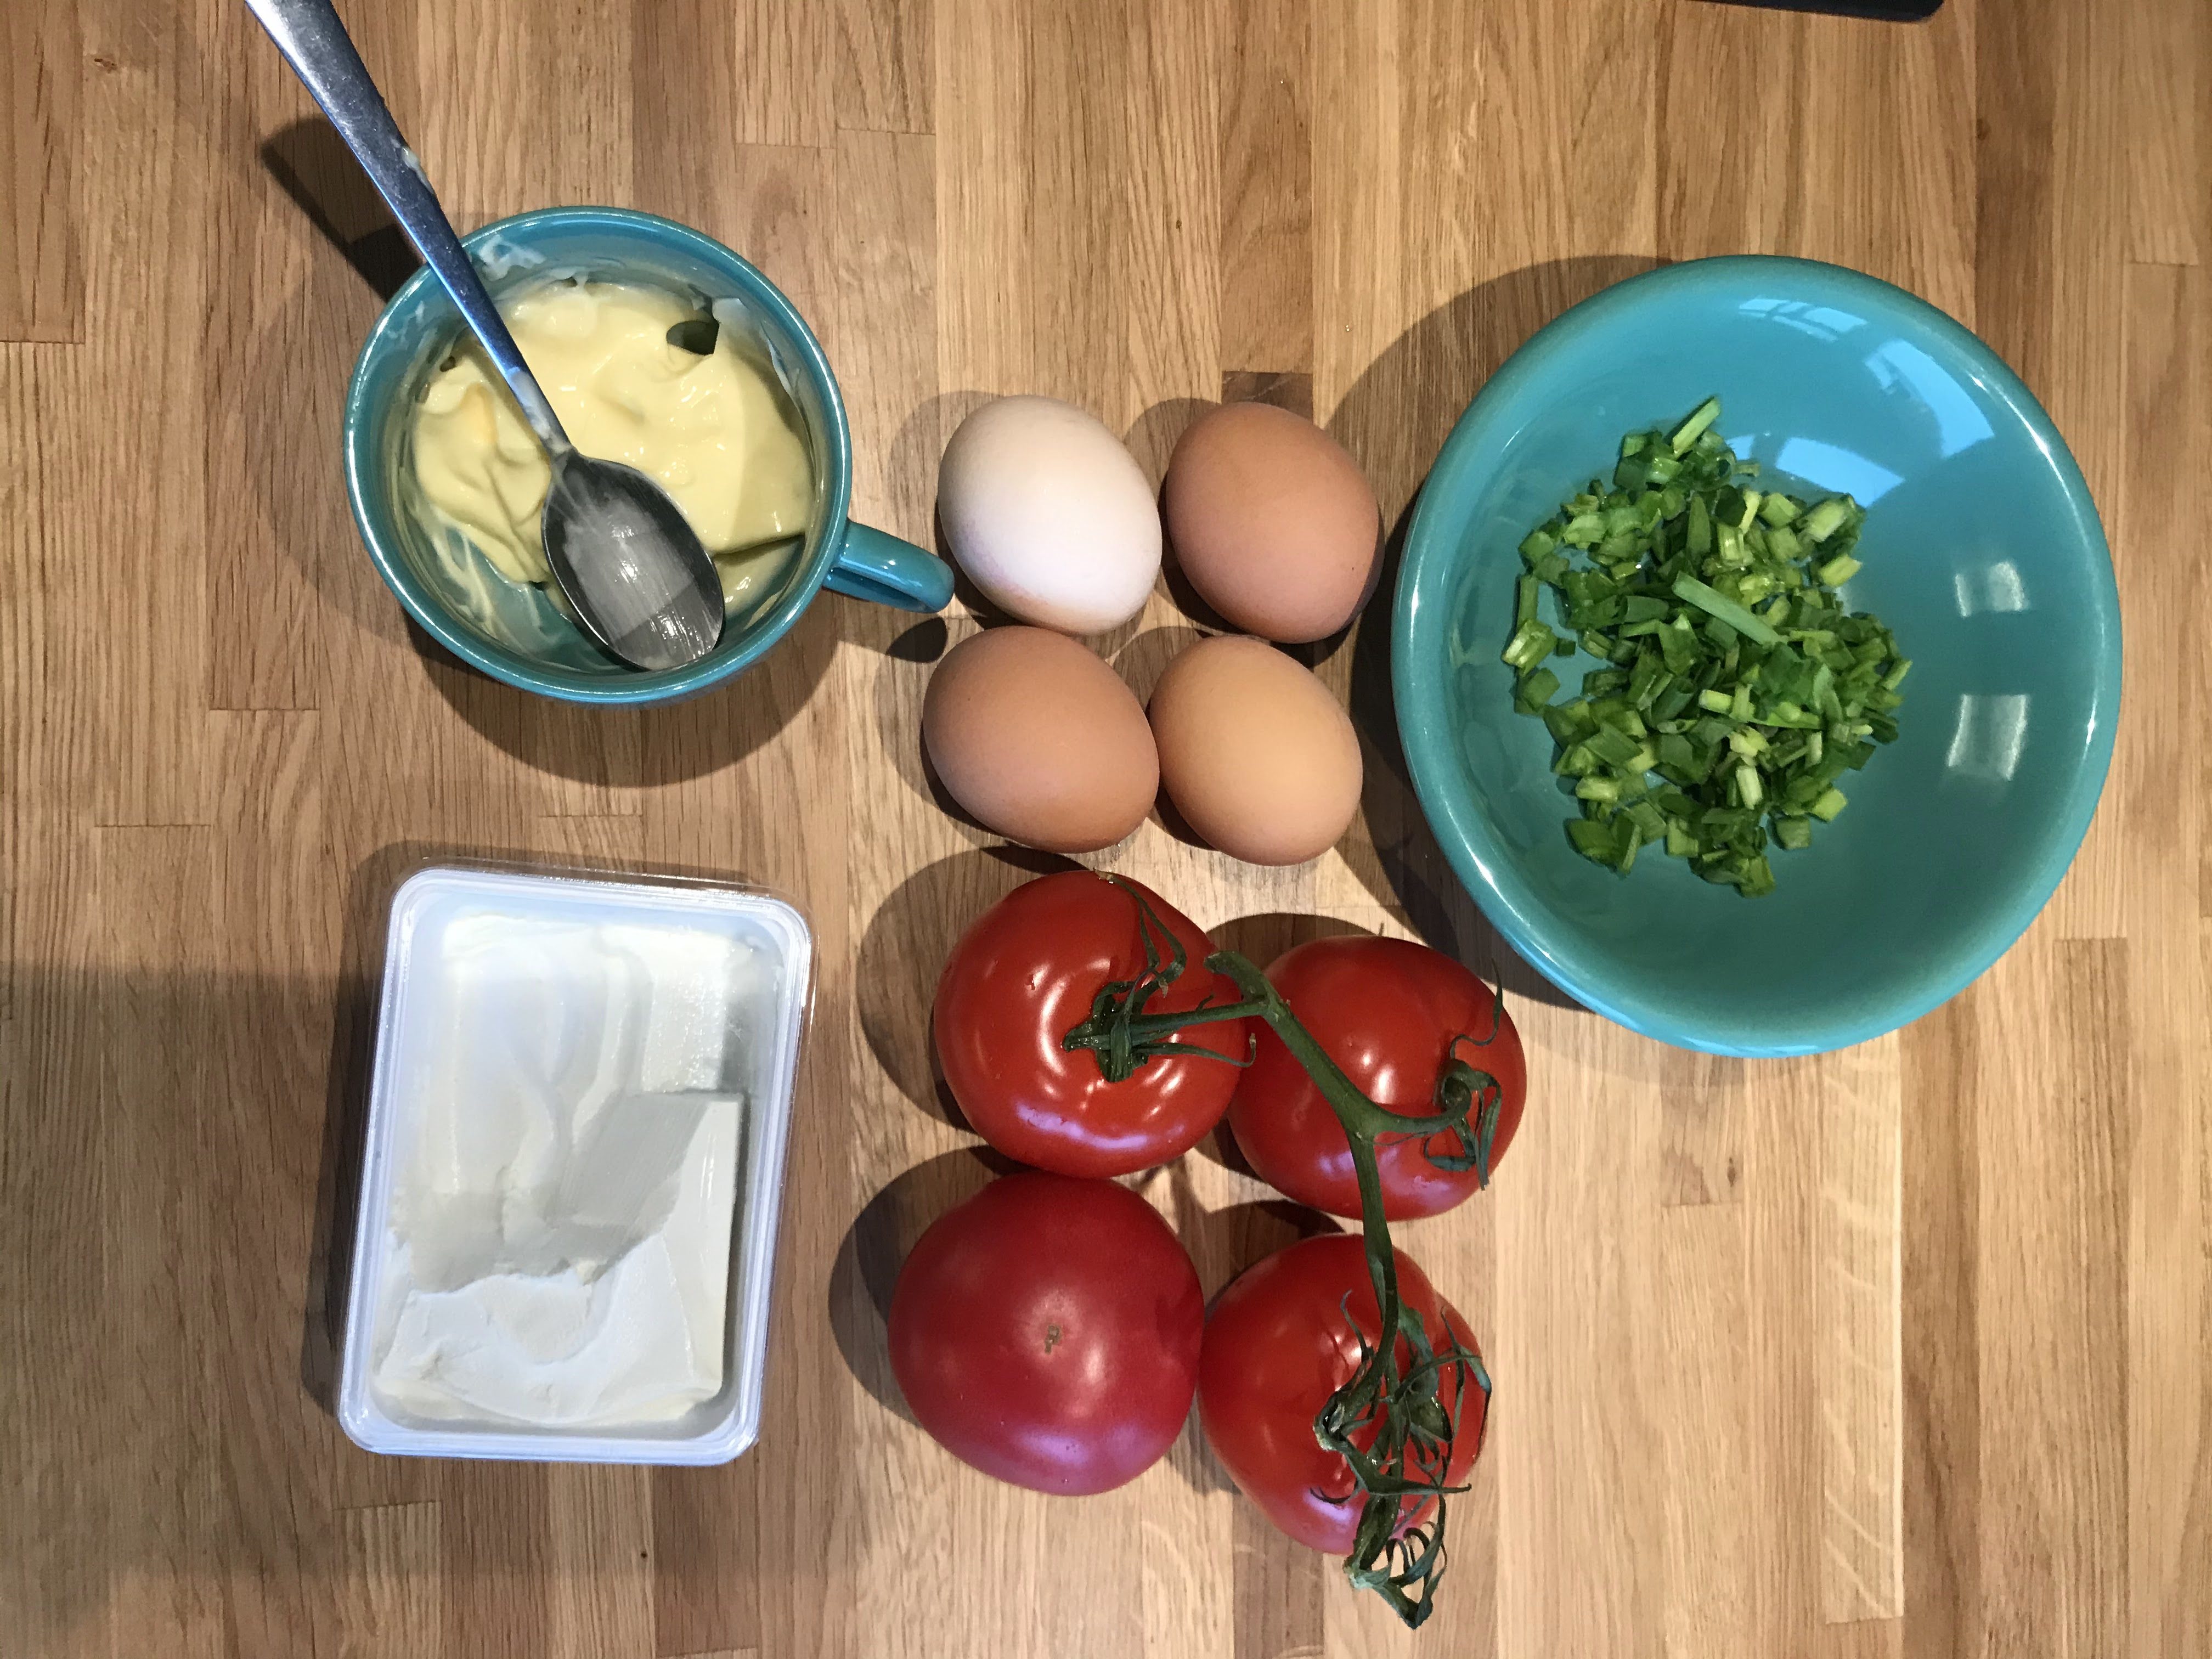 Składniki do potrawy; jajka, szczypiorek, pomidory, serek biały i majonez